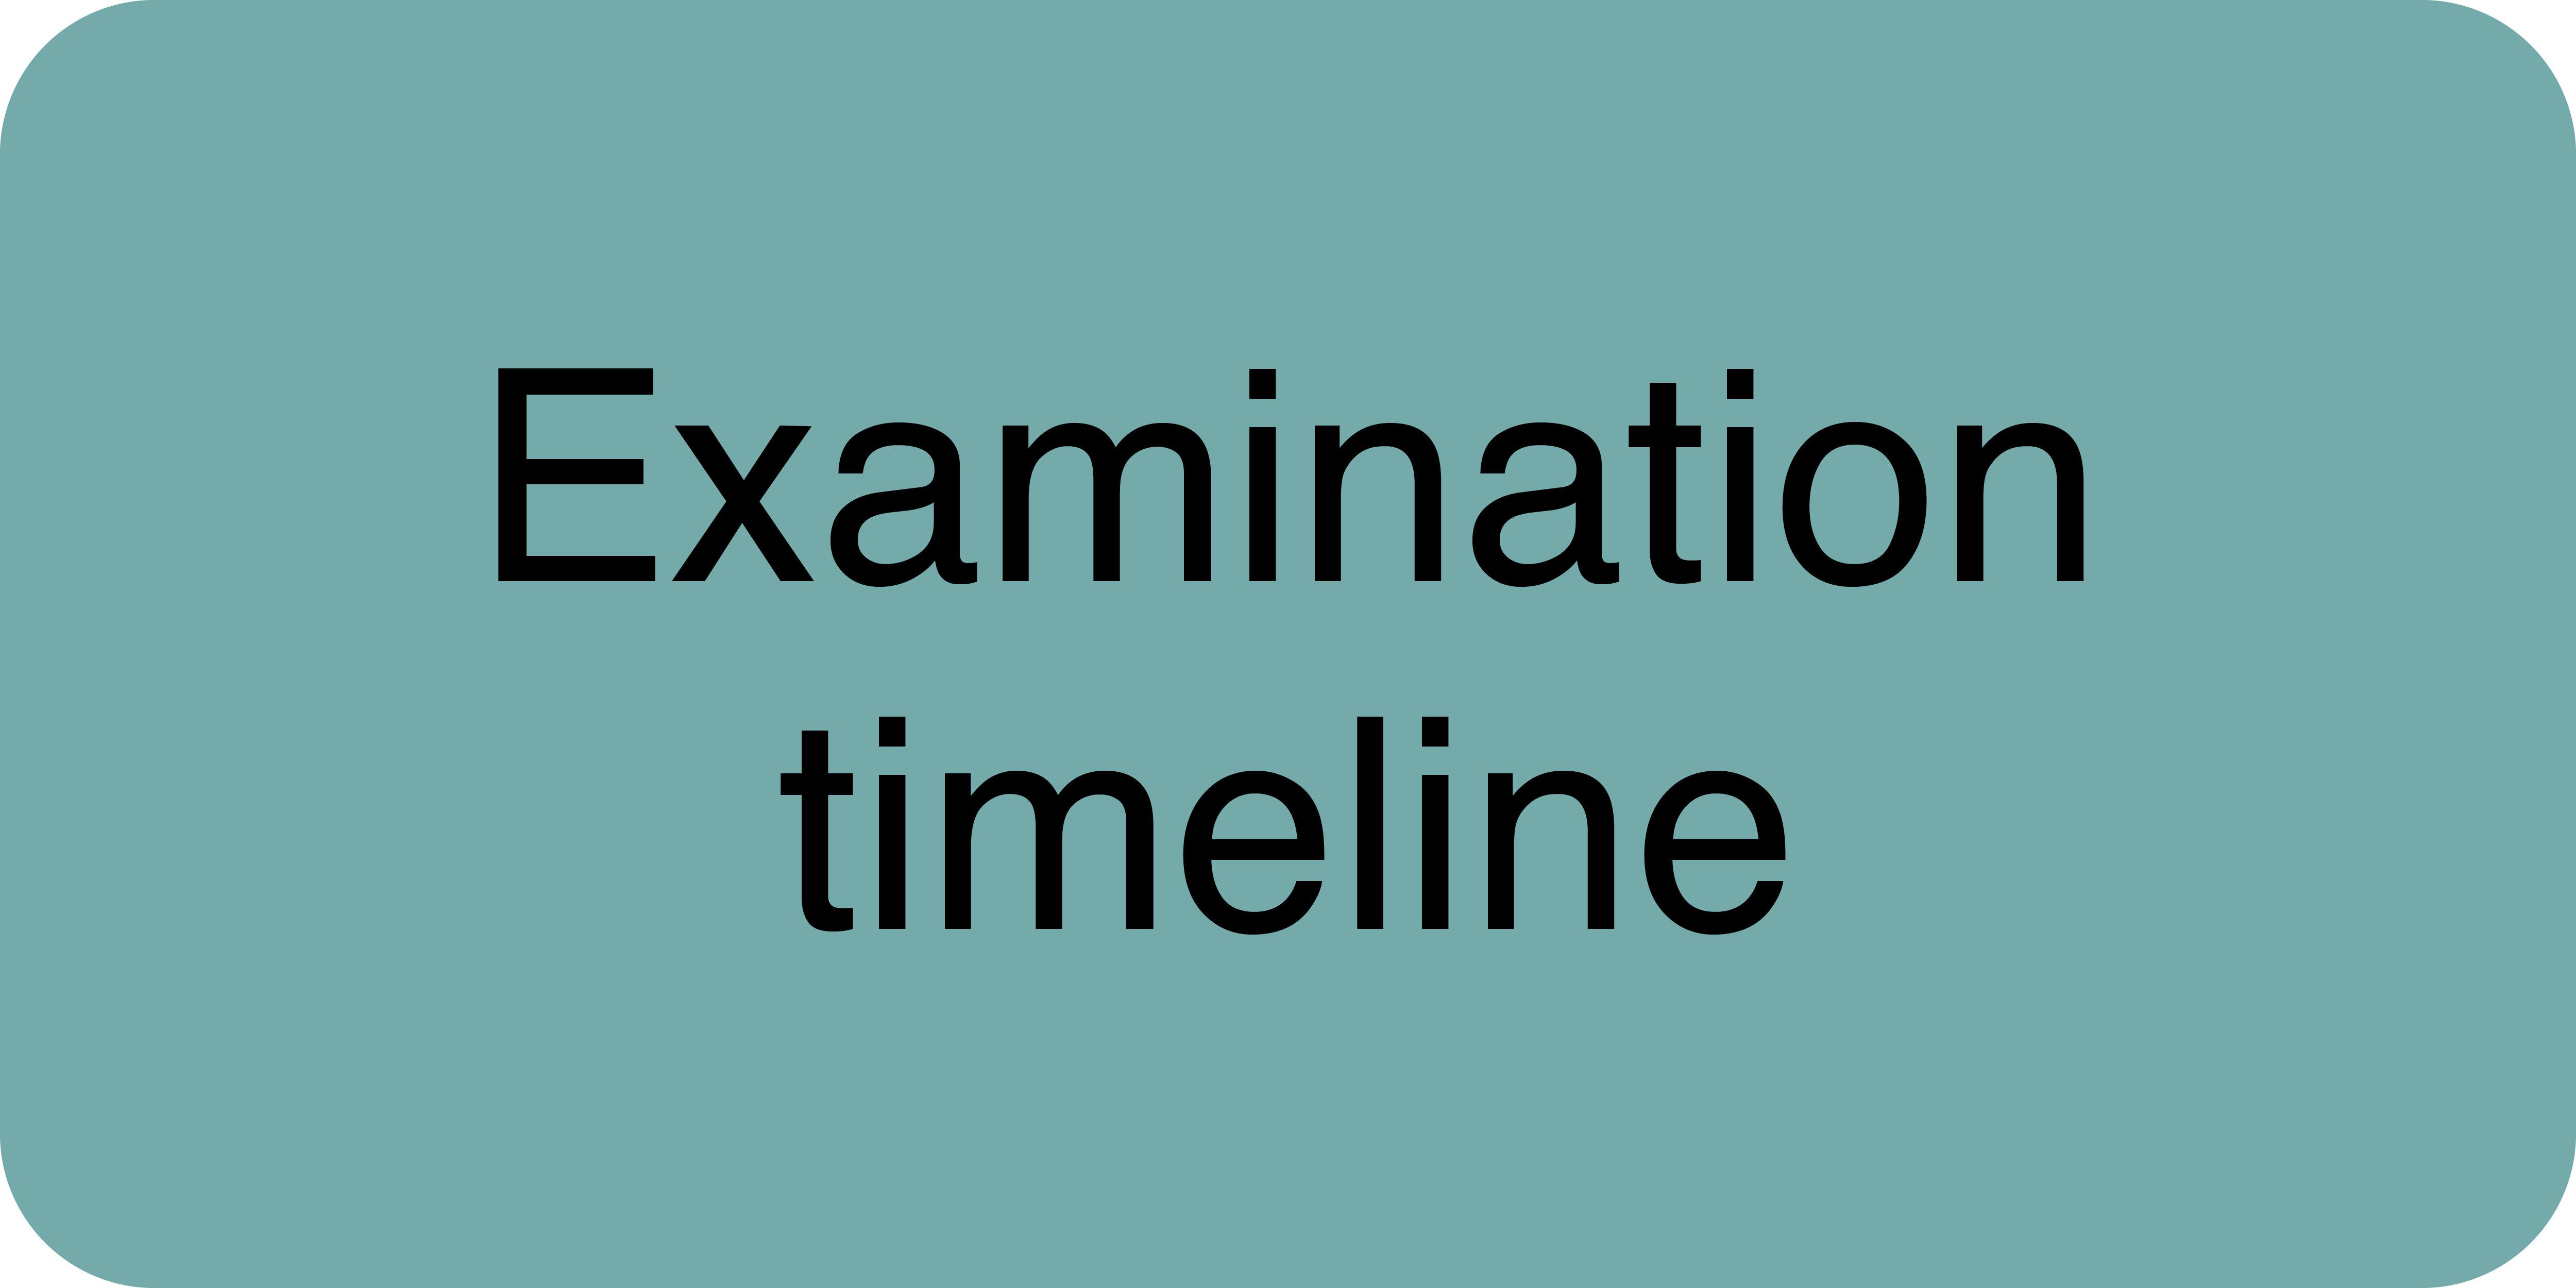 Examination timeline